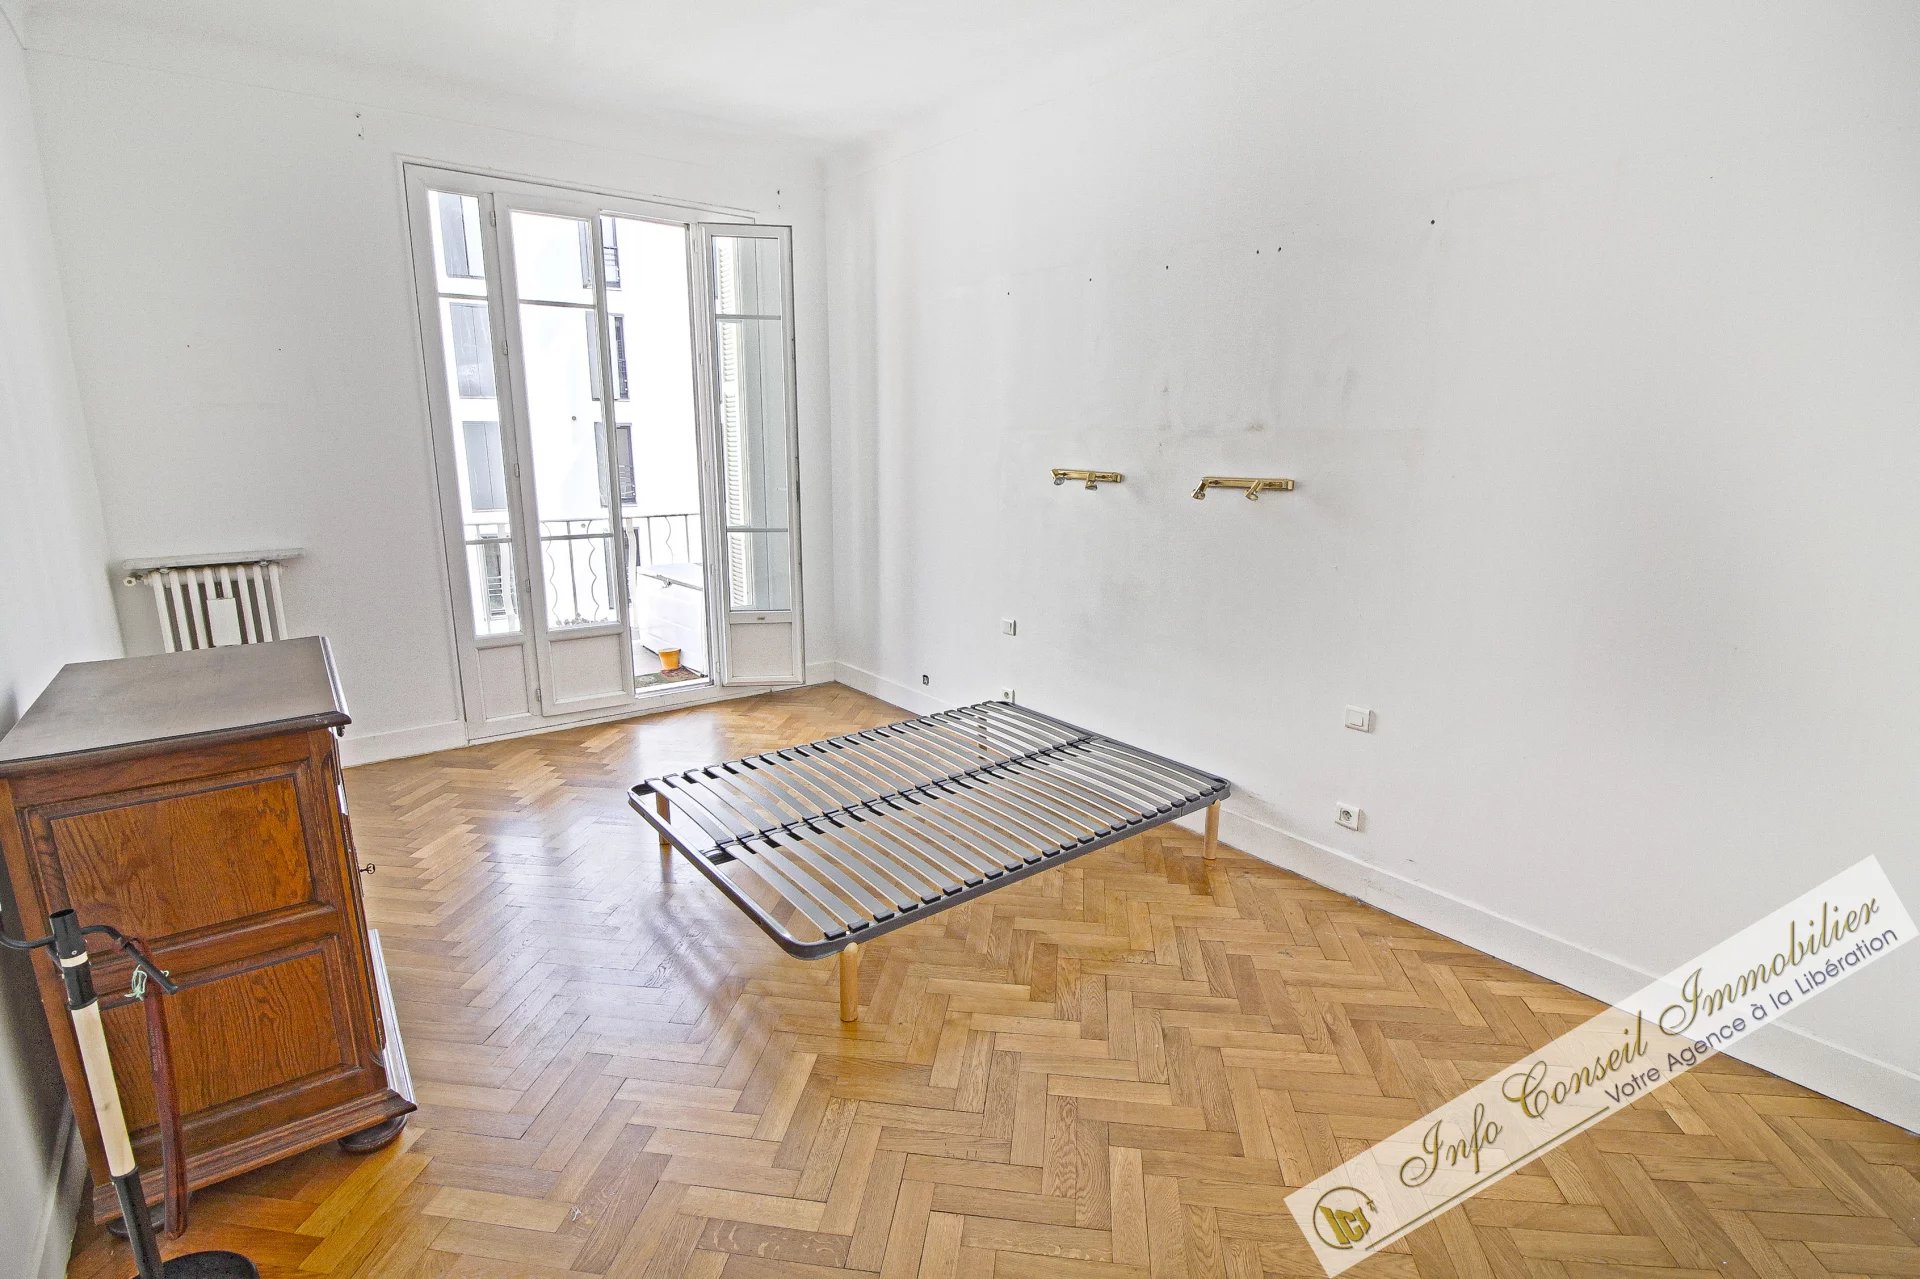 LIBERATION - AVANT DERNIER étage - 5 P 122 m² - 2 Balcons - Traversant  - 530.000 €